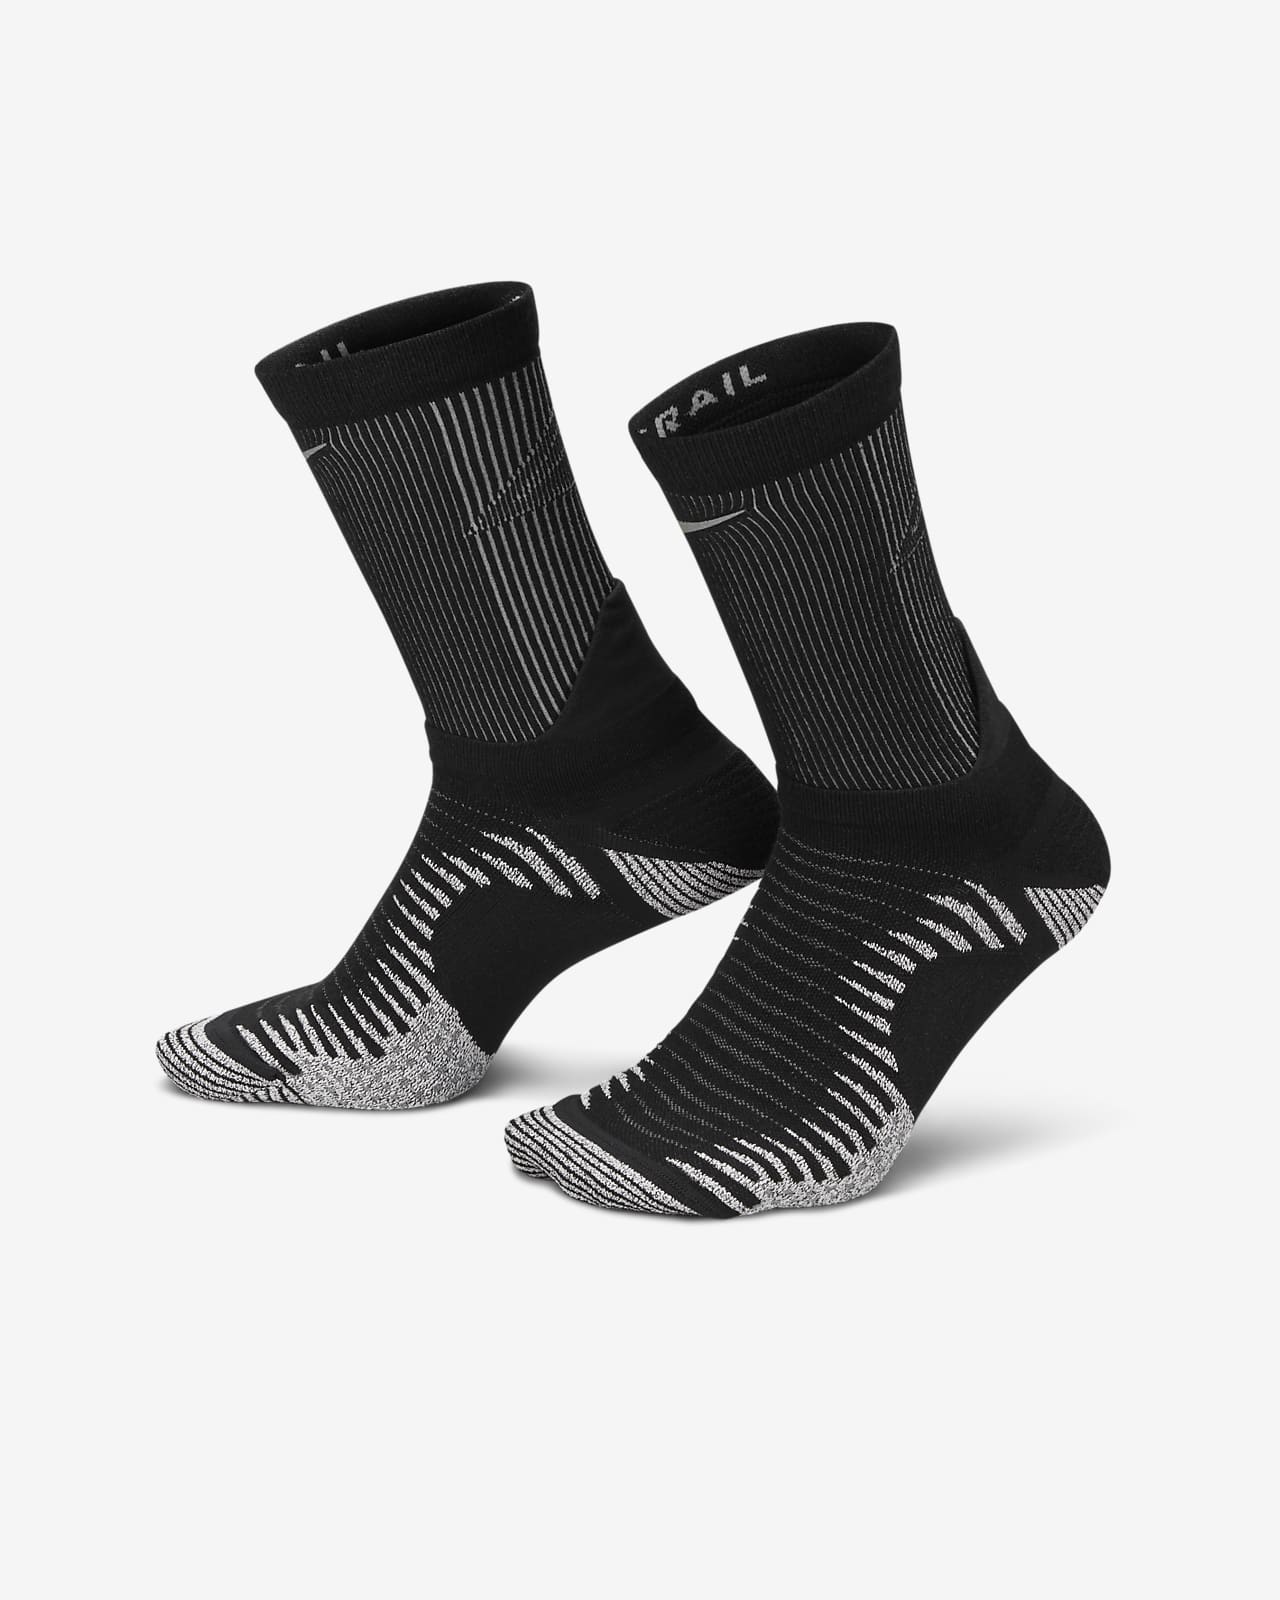 Středně vysoké ponožky Nike Dri-FIT na terénní běh